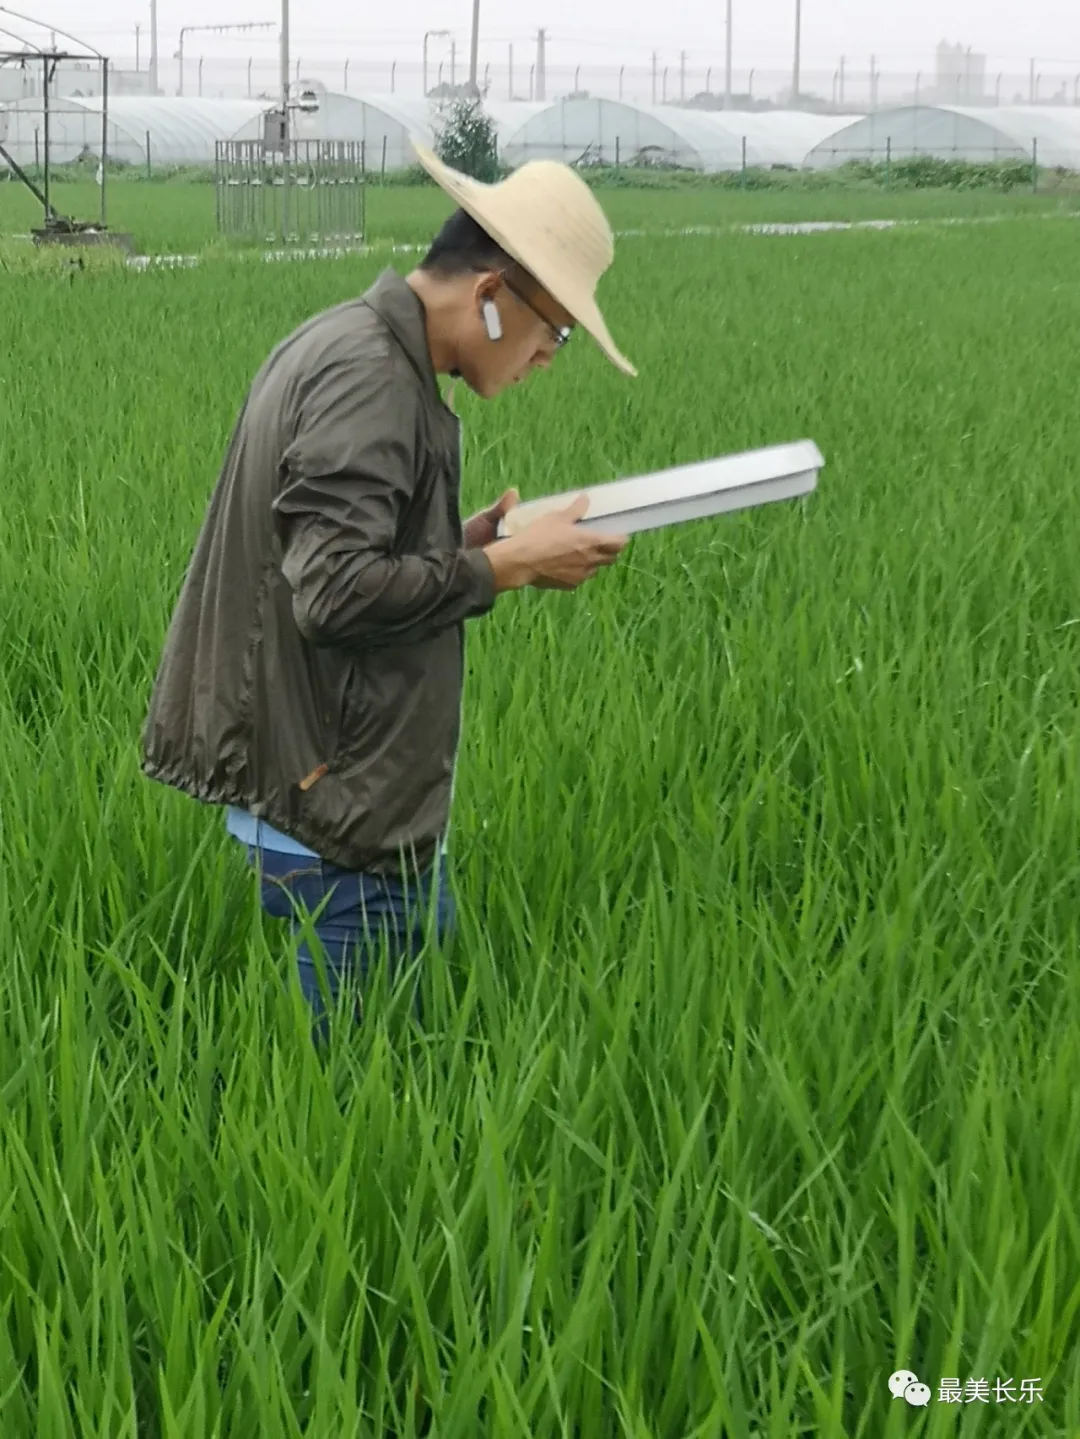 @农民朋友，当前要注意防治水稻病虫害！